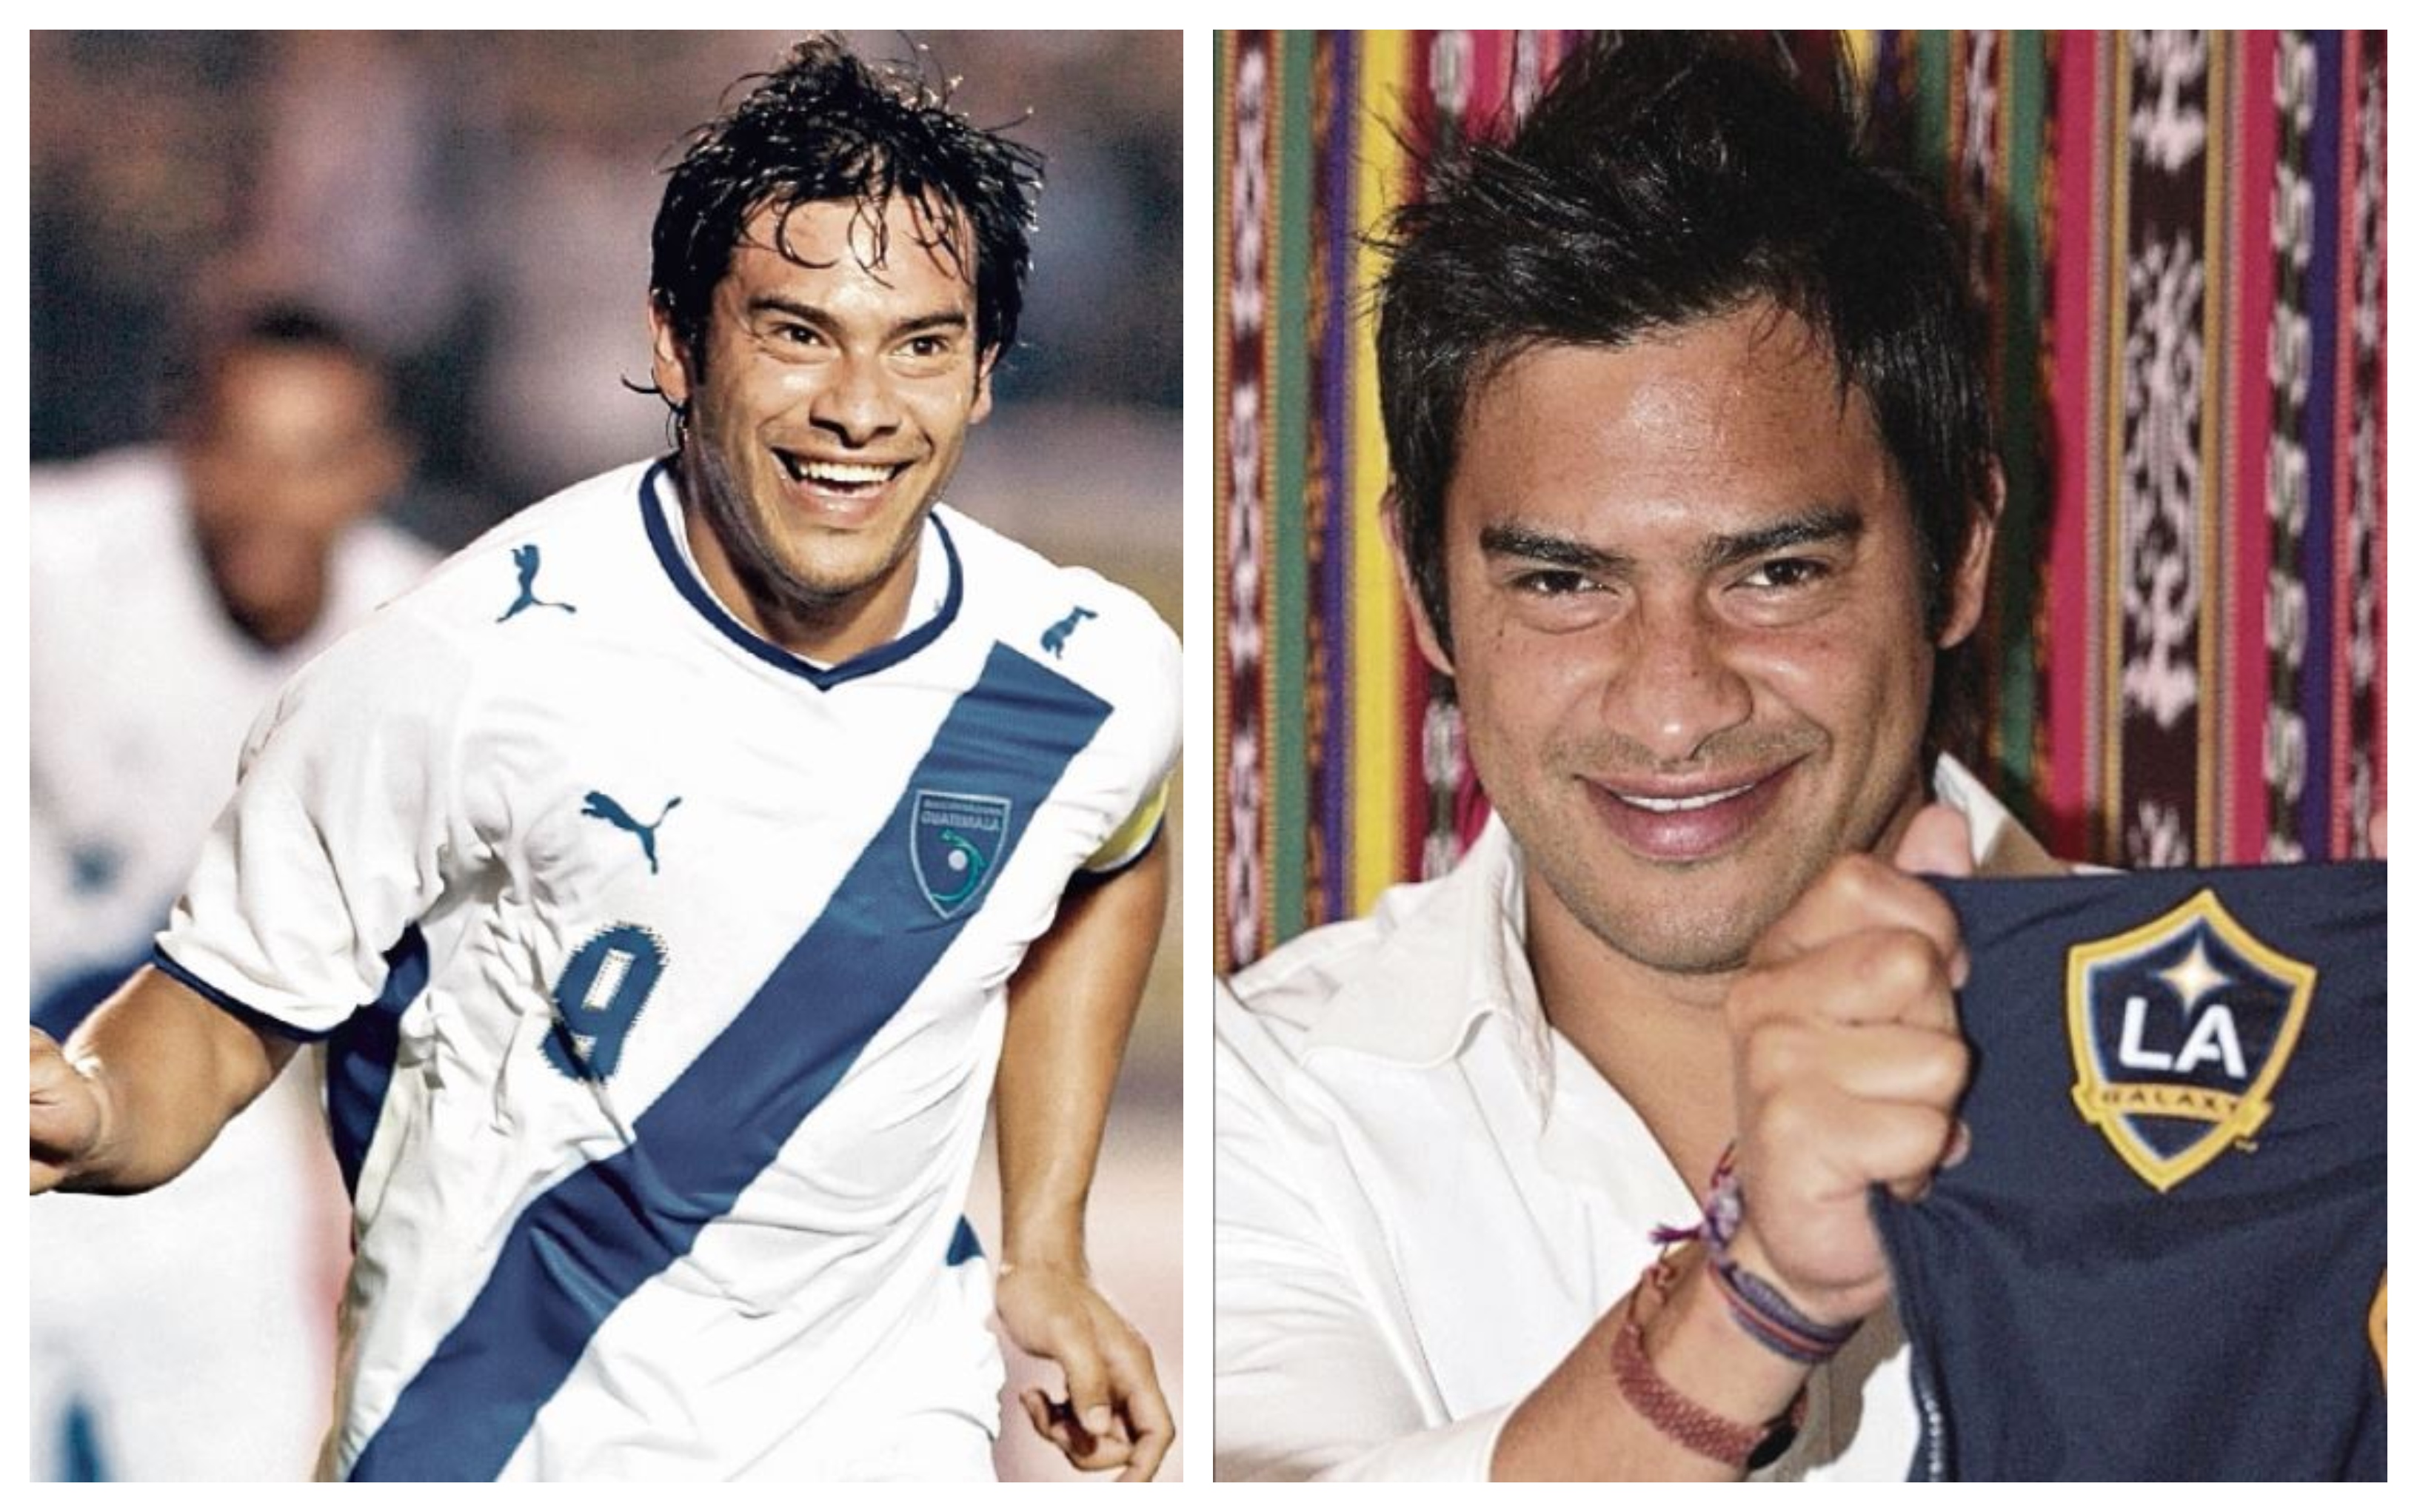 Carlos 'el Pescado' Ruiz continúa siendo uno de los preferidos por la afición en la historia del futbol nacional. (Foto Prensa Libre: Hemeroteca PL)